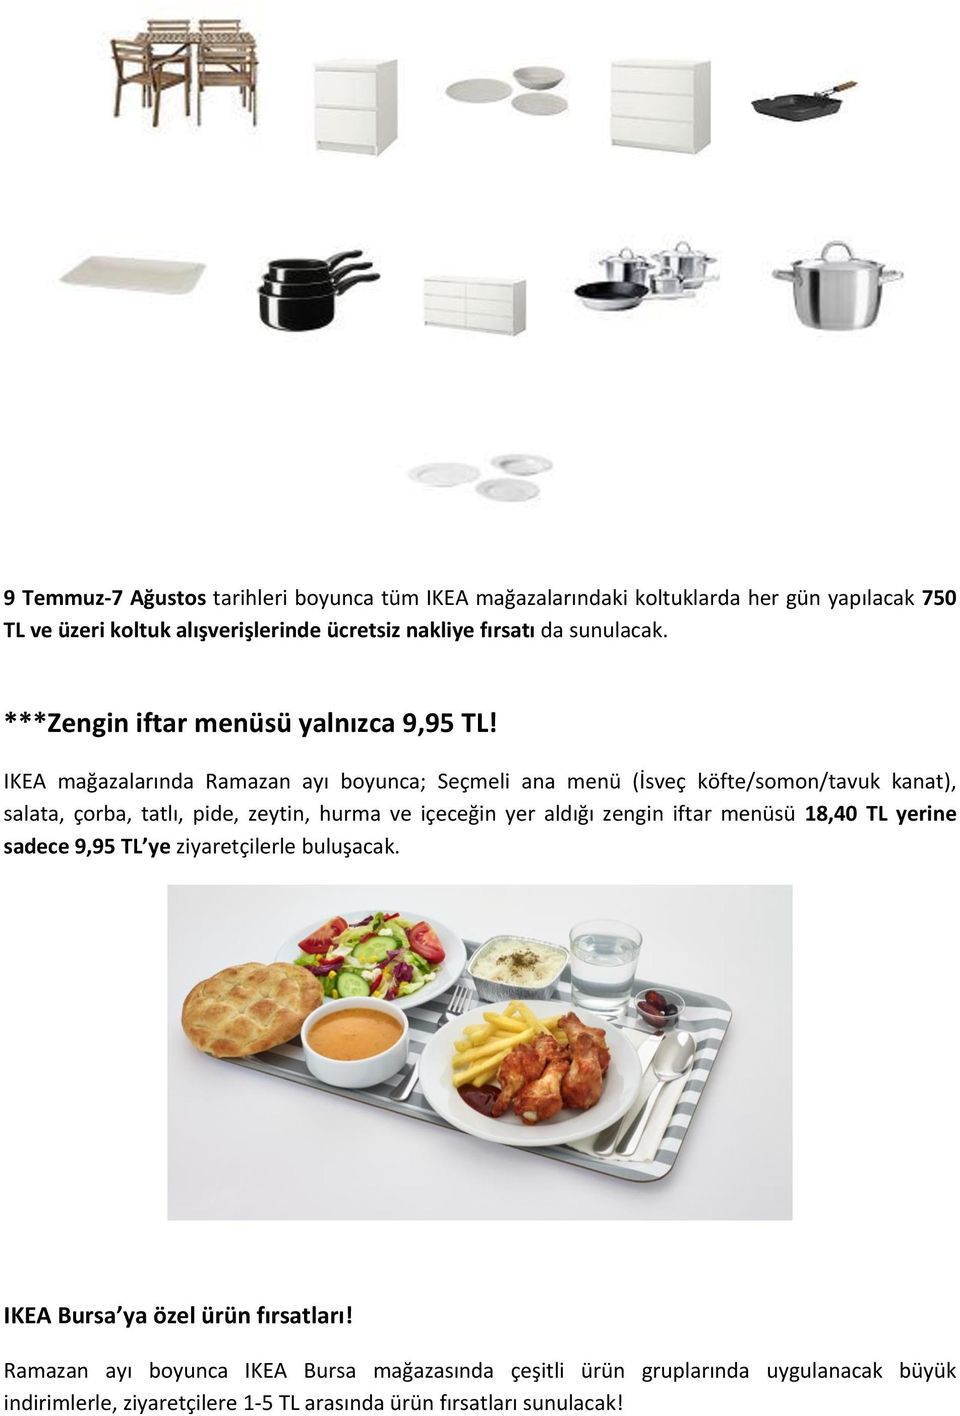 IKEA mağazalarında Ramazan ayı boyunca; Seçmeli ana menü (İsveç köfte/somon/tavuk kanat), salata, çorba, tatlı, pide, zeytin, hurma ve içeceğin yer aldığı